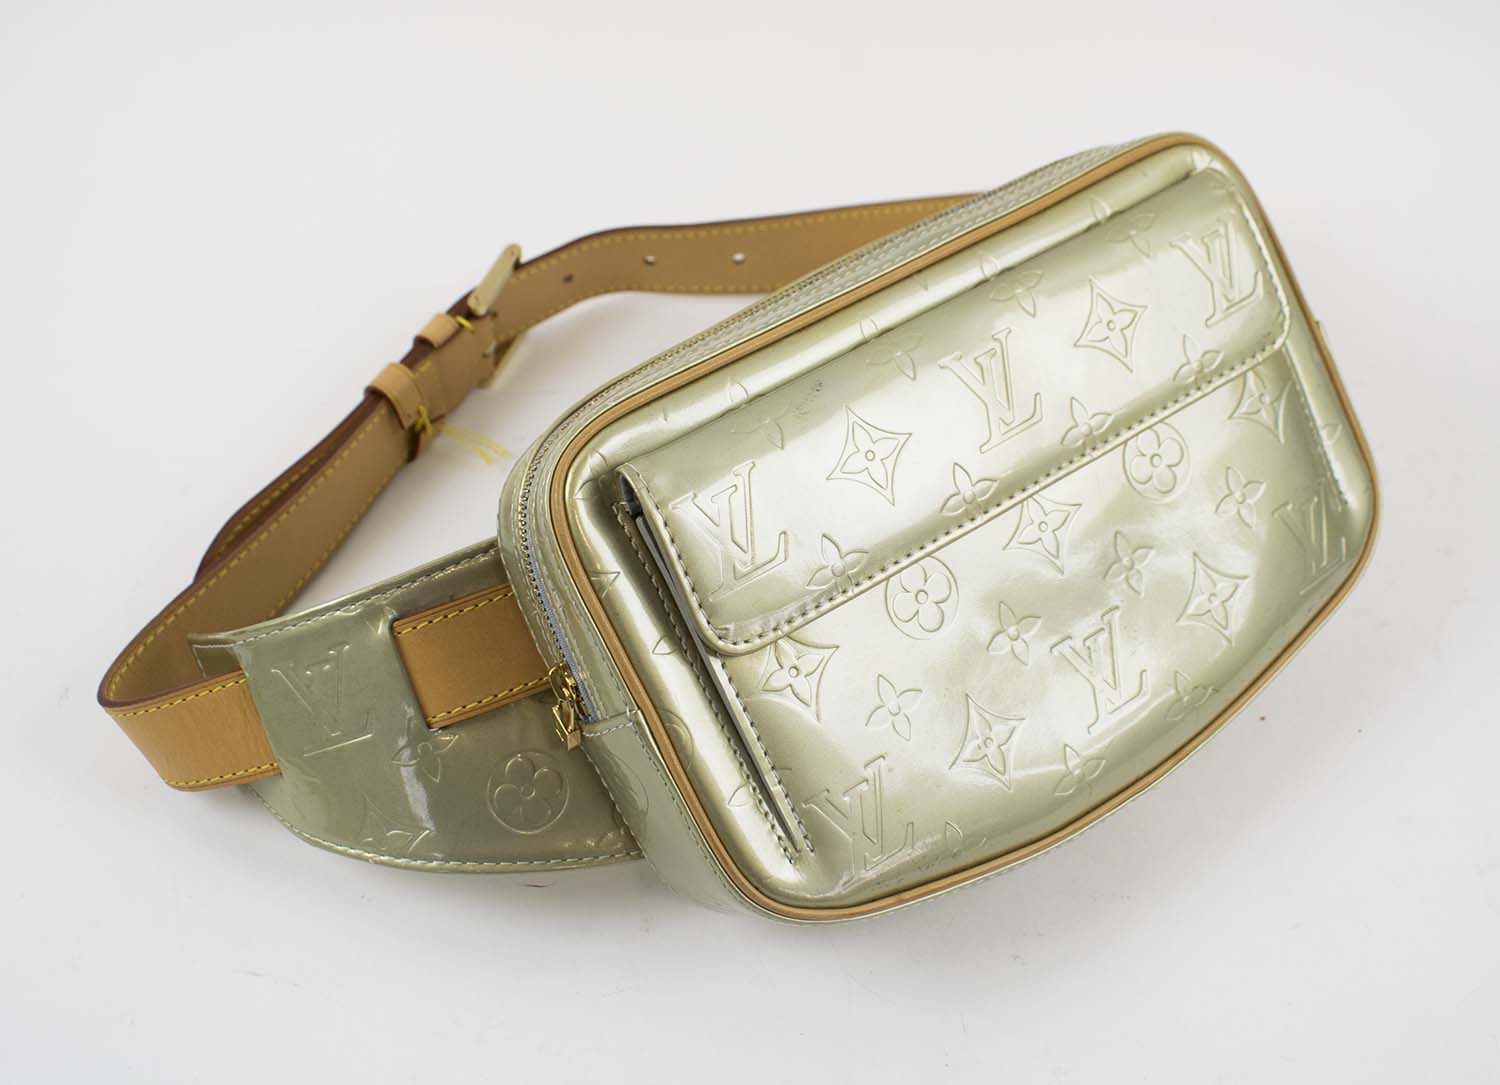 Louis Vuitton Monogram Leather Double Buckle Bum Fanny Pack Waist